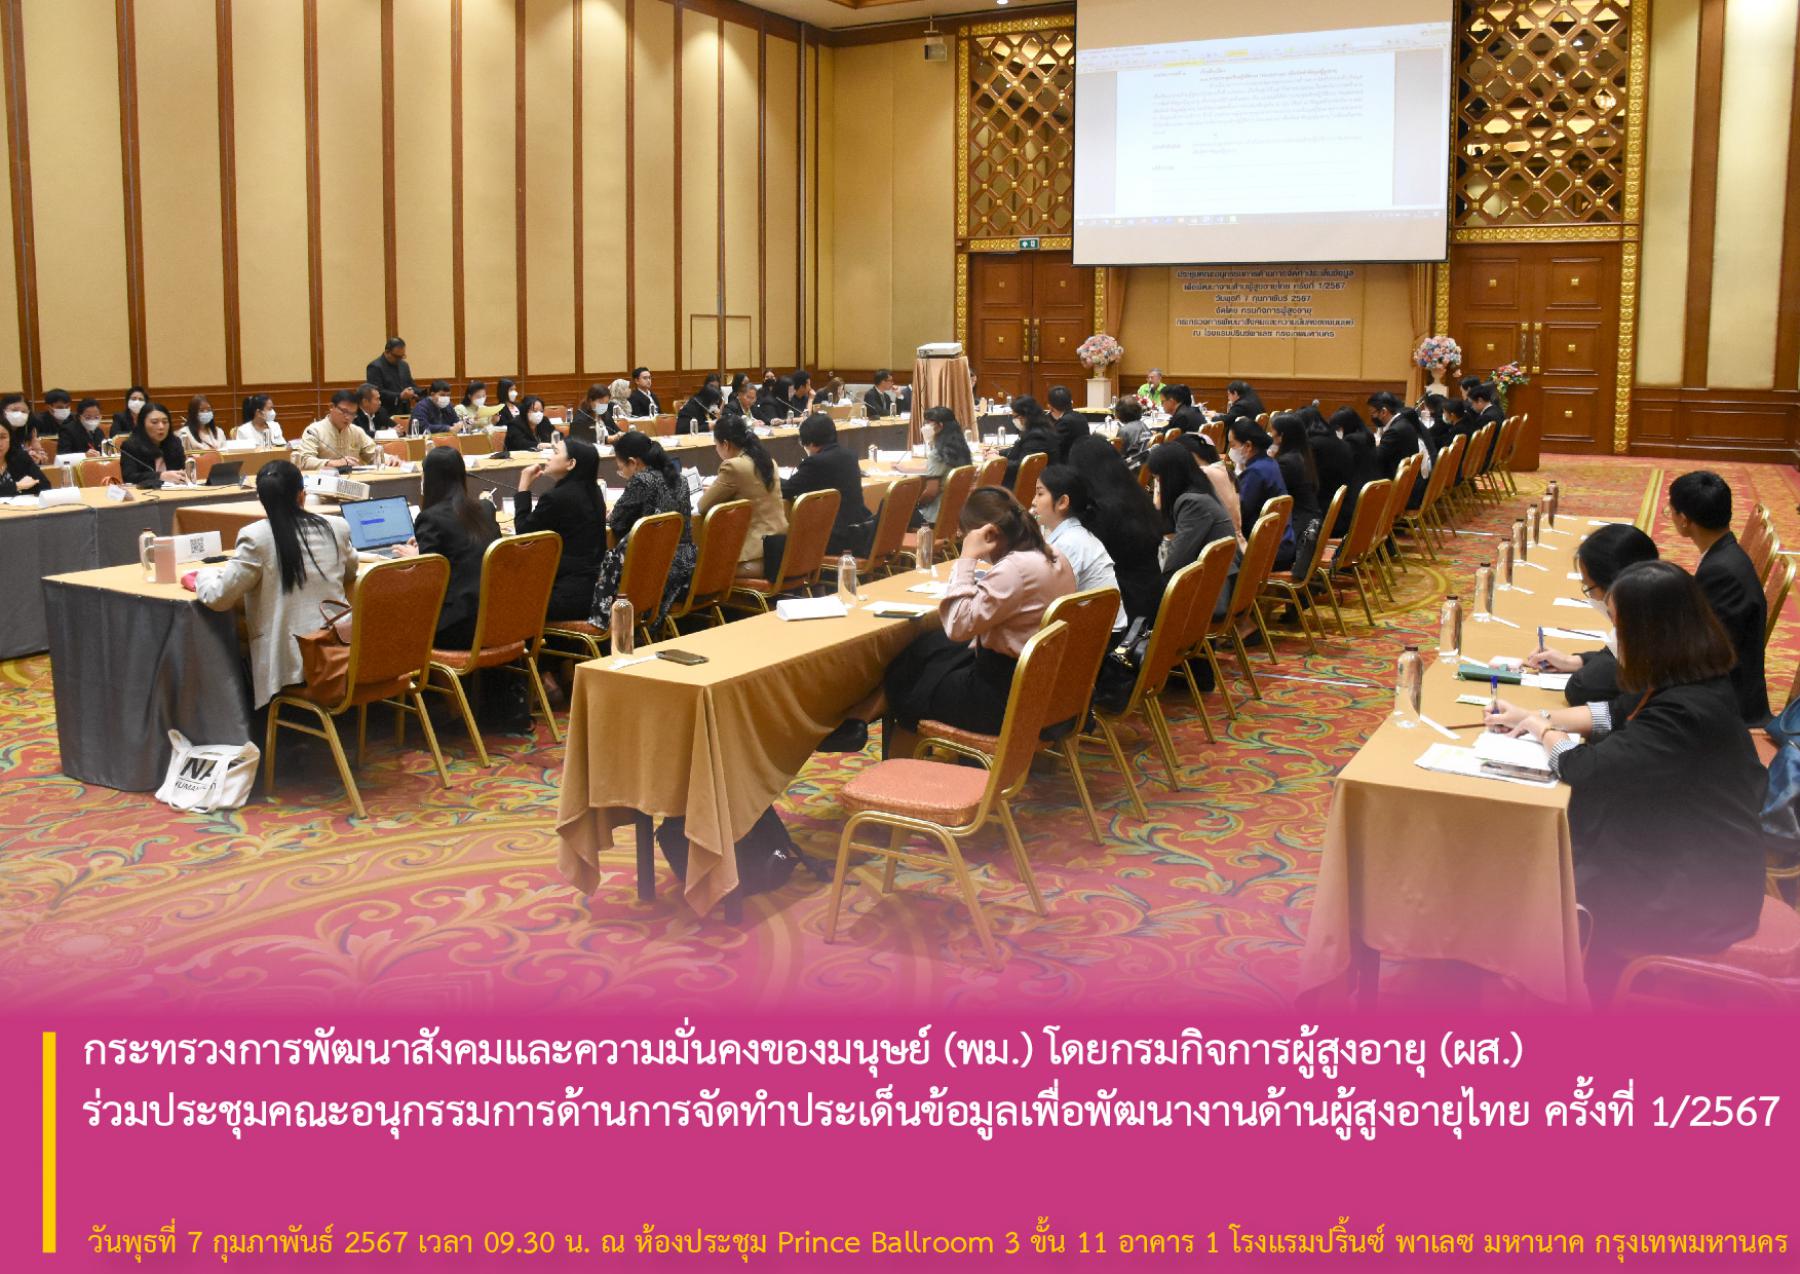 กระทรวงการพัฒนาสังคมและความมั่นคงของมนุษย์ (พม.) โดยกรมกิจการผู้สูงอายุ (ผส.) ร่วมประชุมคณะอนุกรรมการด้านการจัดทำประเด็นข้อมูลเพื่อพัฒนางานด้านผู้สูงอายุไทย ครั้งที่ 1/2567